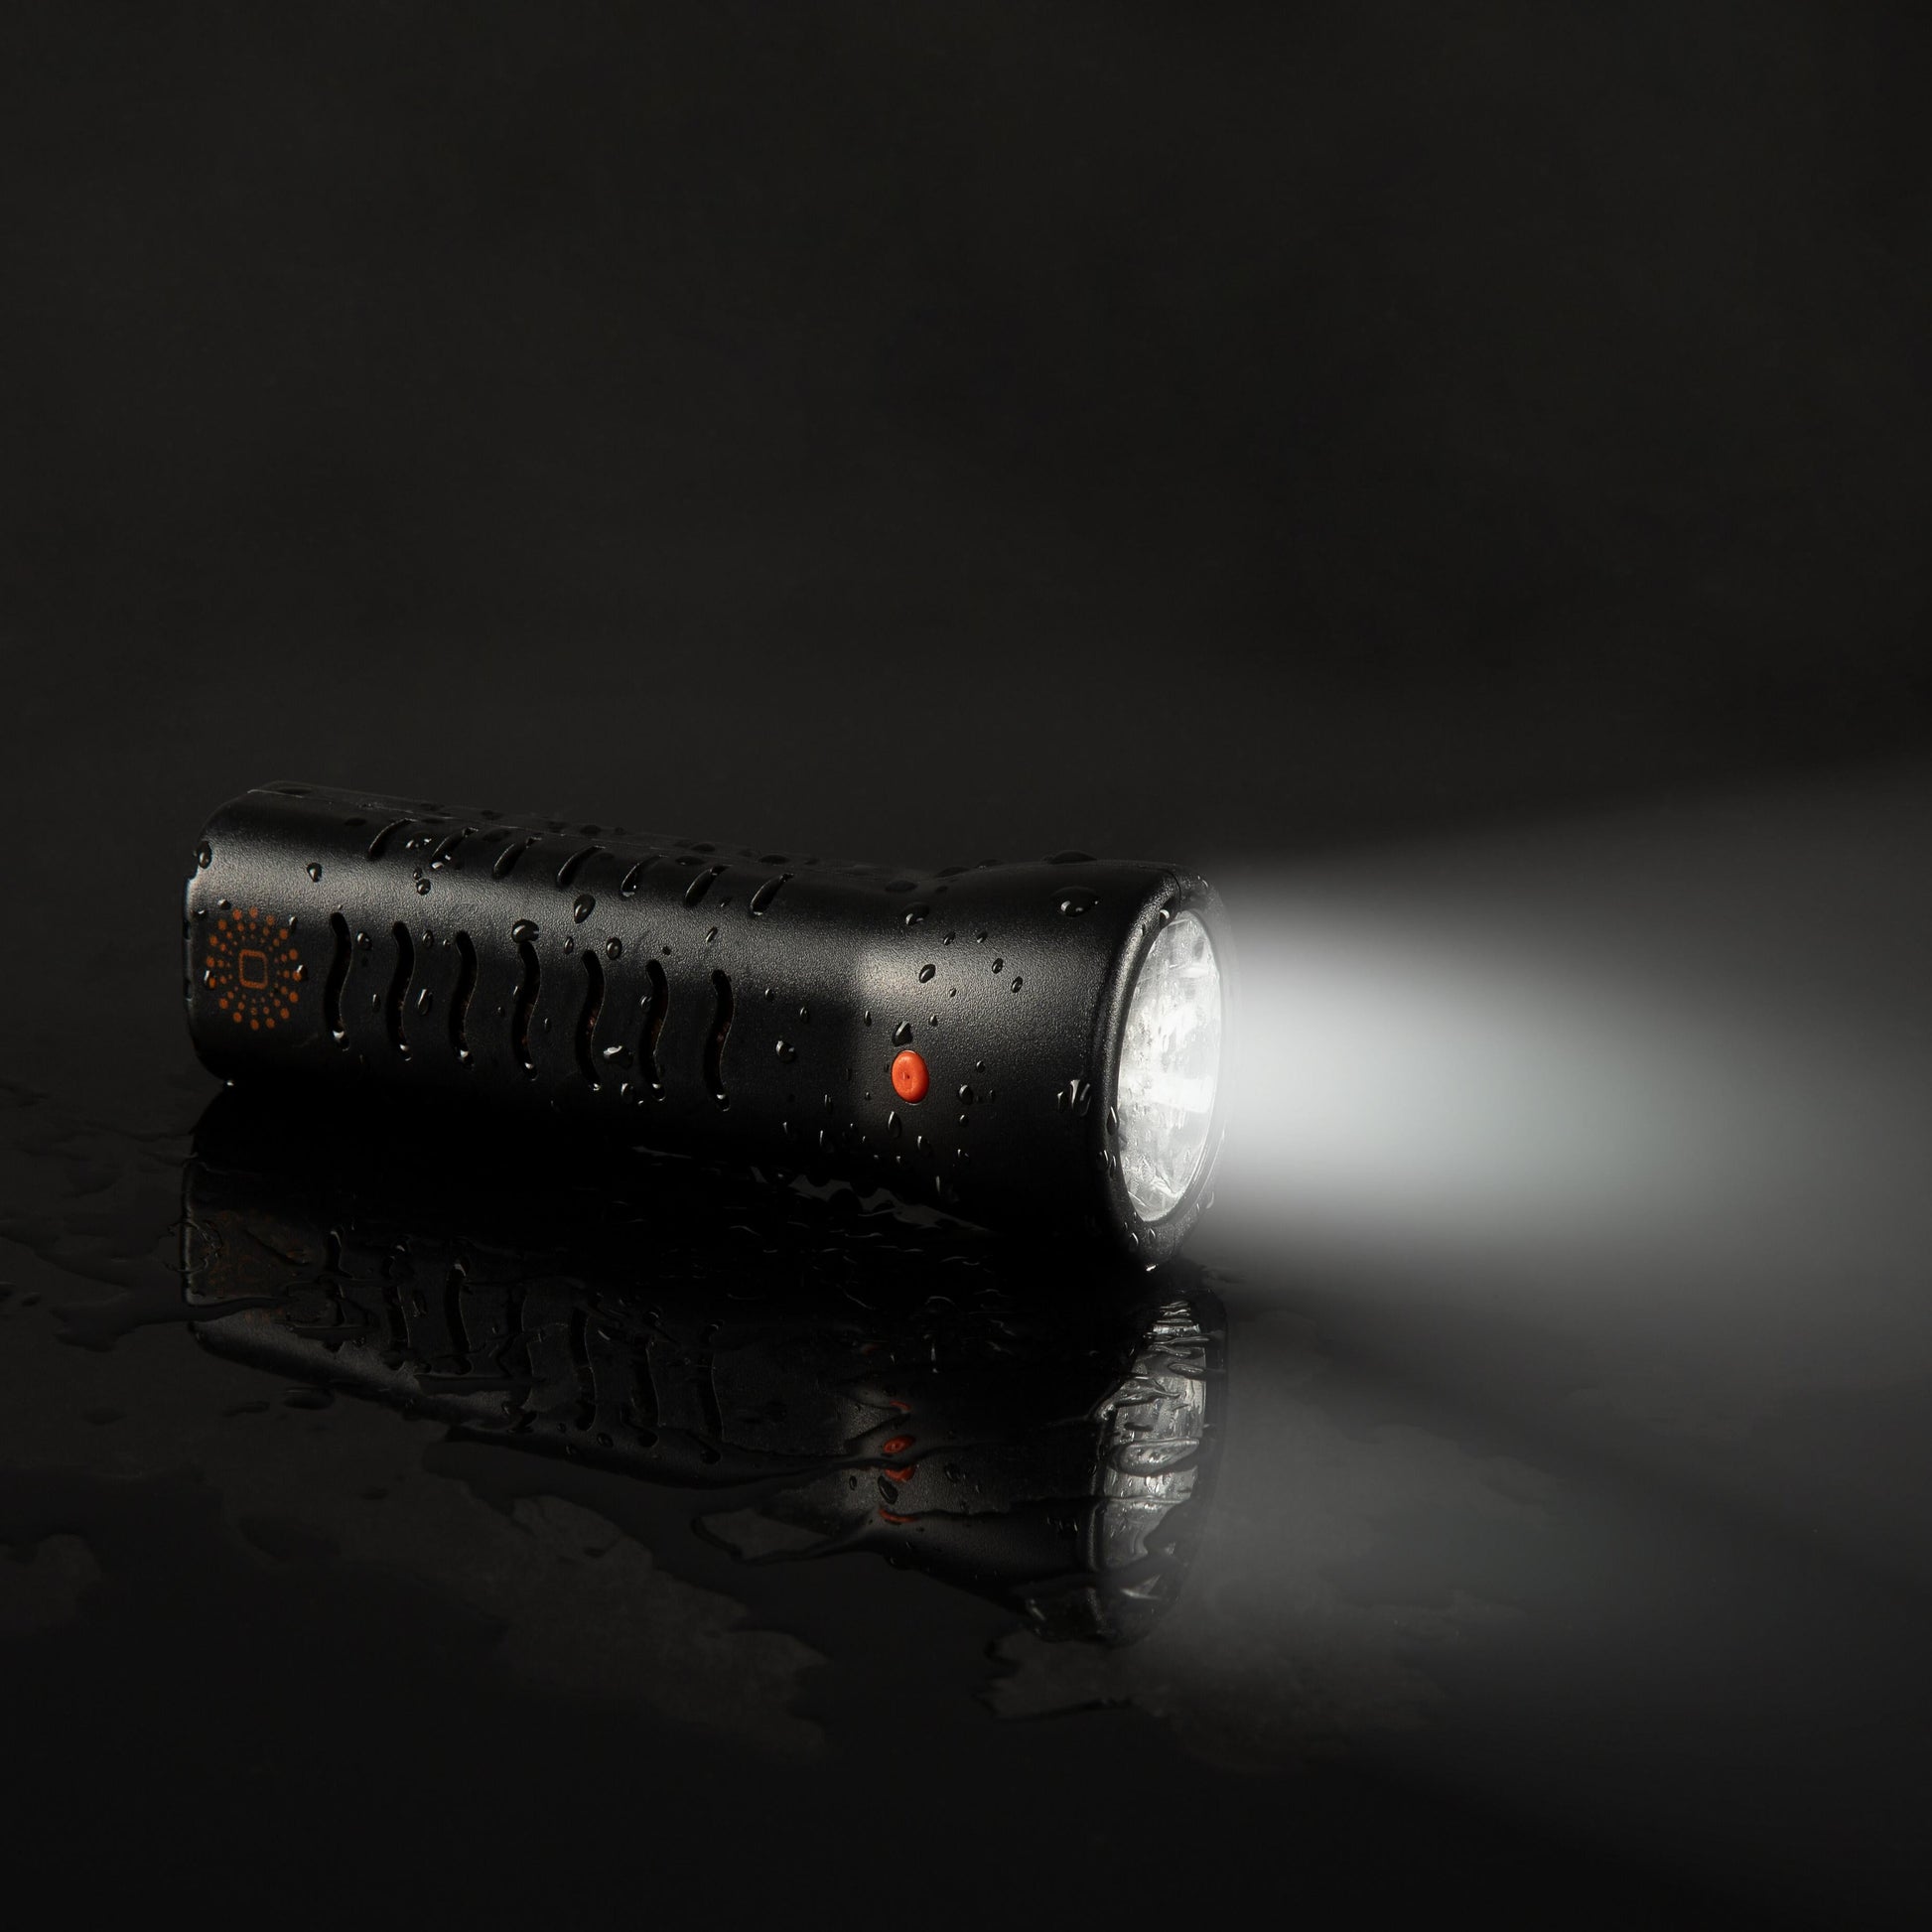 Nachtlichtzauber: WaterLamp durchbricht die Dunkelheit. Leuchtende Taschenlampe auf nassem Boden mit subtilen Wasserspritzern. Erlebe die Kraft der Wasseraktivierung im WaterLamp Shop!